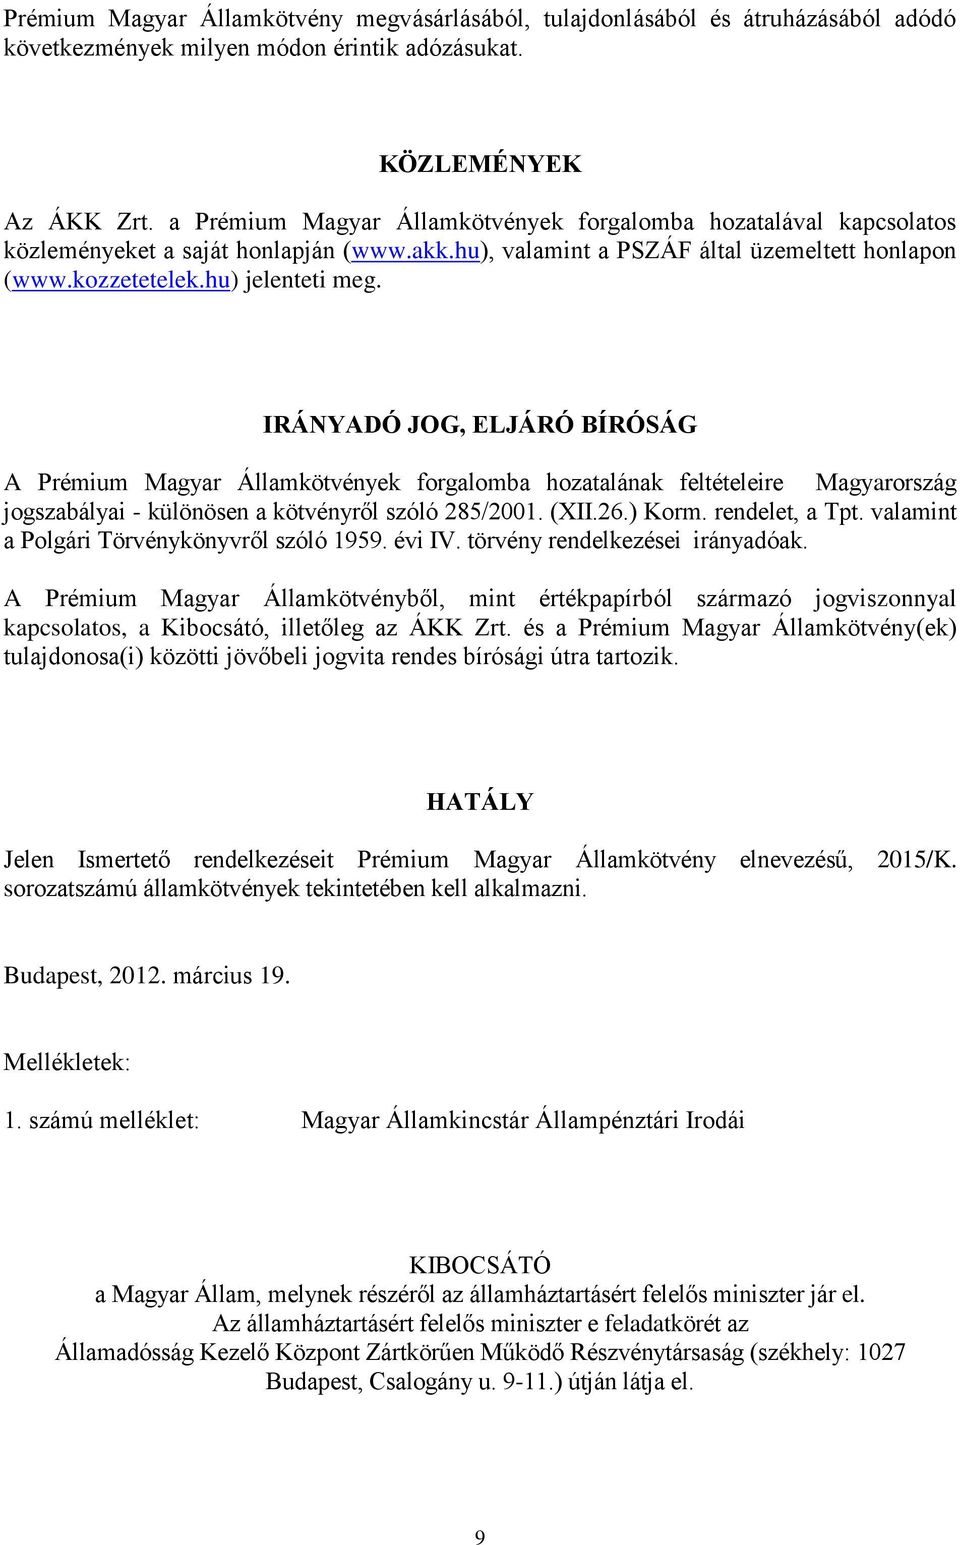 IRÁNYADÓ JOG, ELJÁRÓ BÍRÓSÁG A Prémium Magyar Államkötvények forgalomba hozatalának feltételeire Magyarország jogszabályai - különösen a kötvényről szóló 285/2001. (XII.26.) Korm. rendelet, a Tpt.